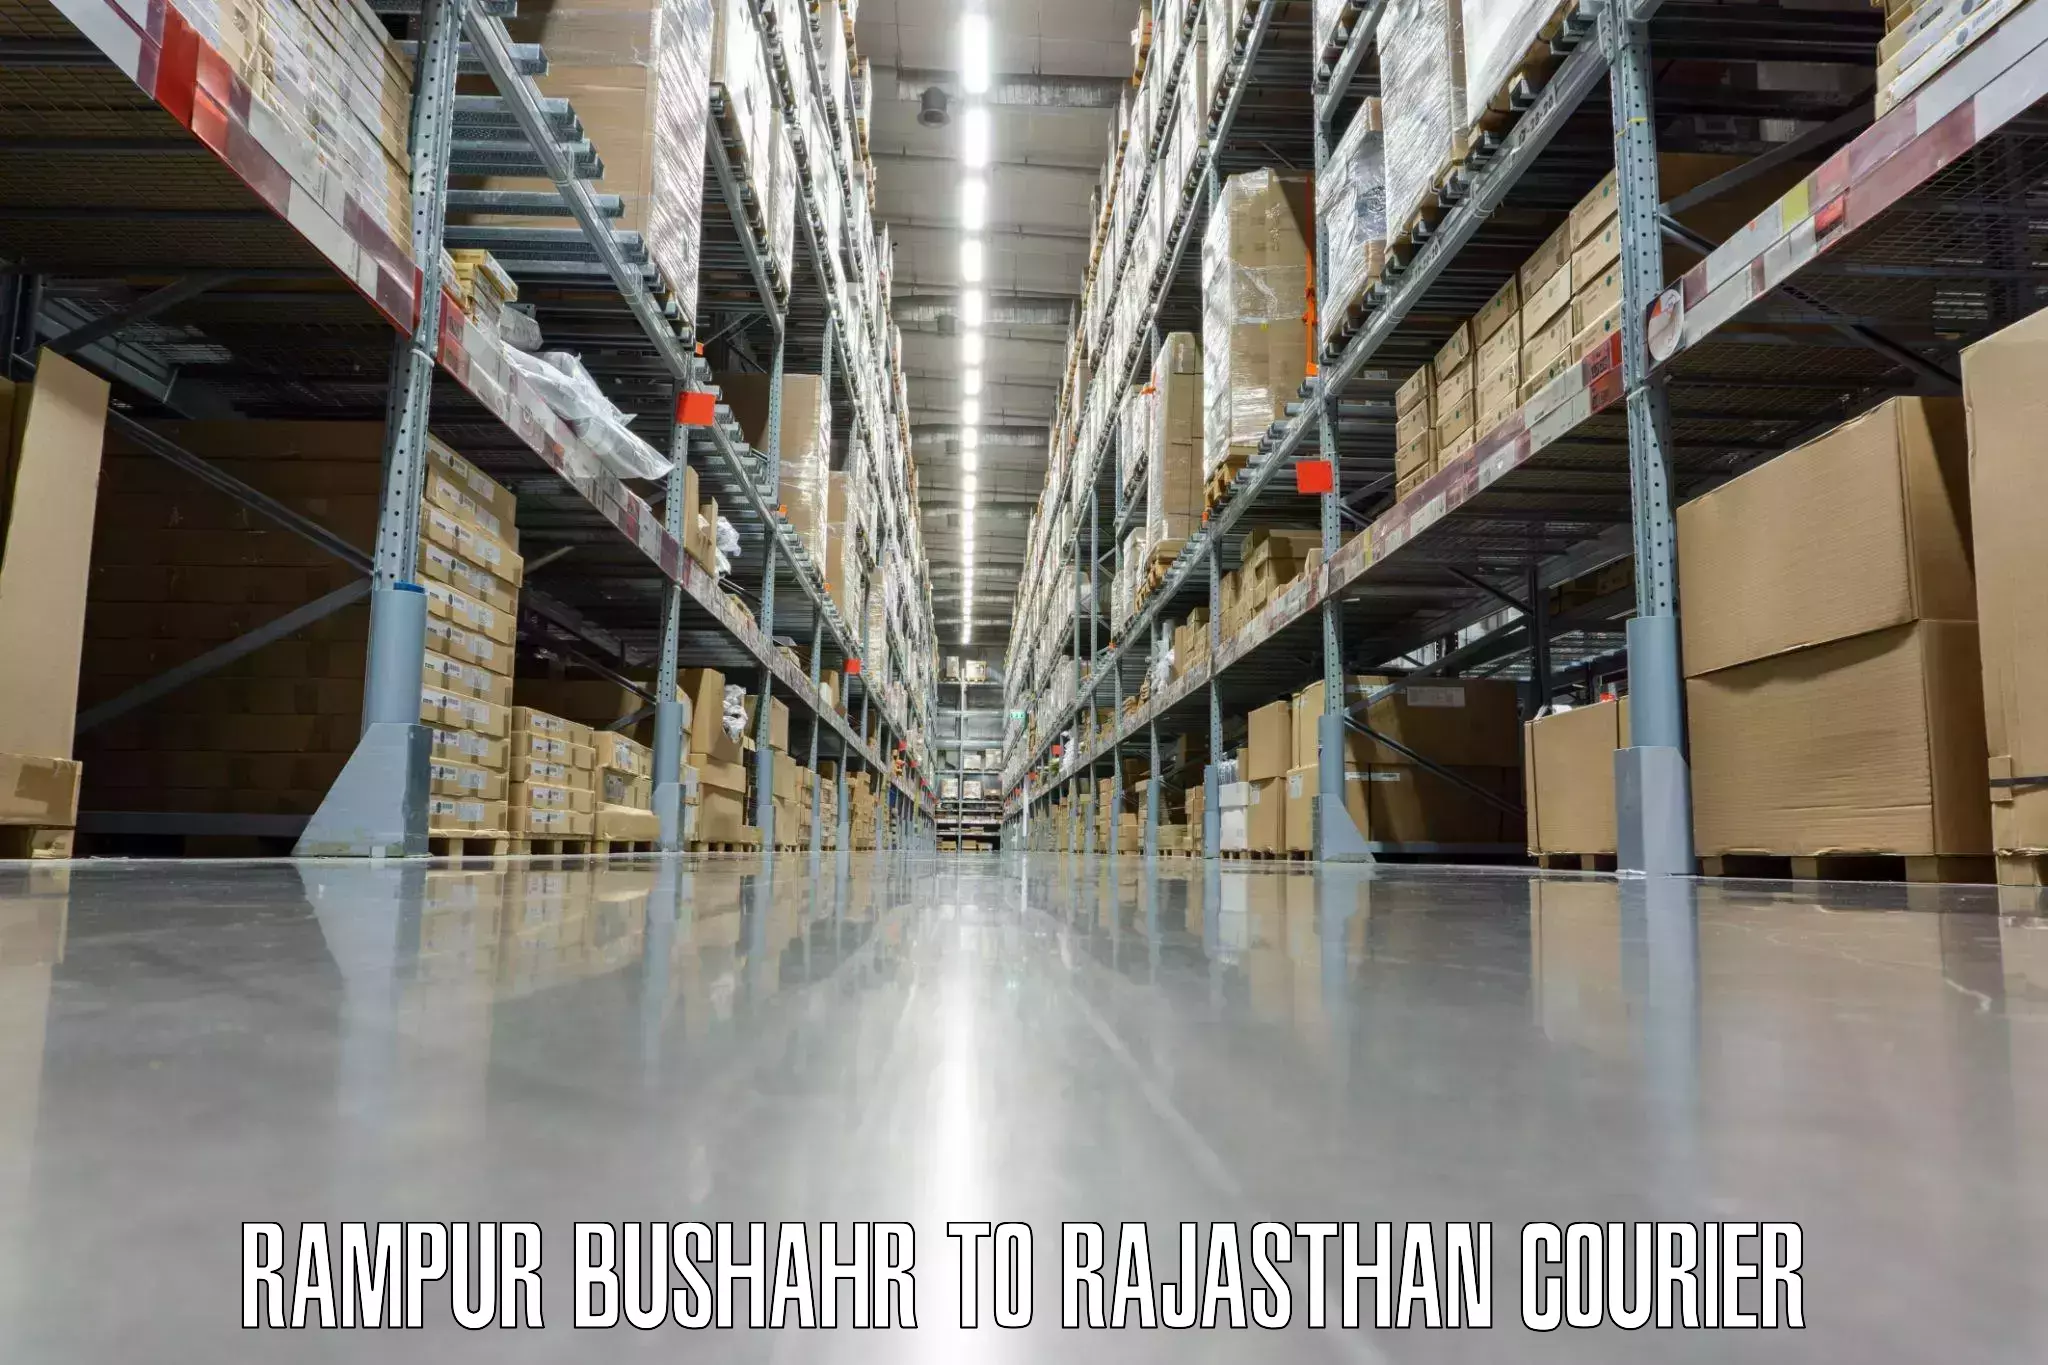 Luggage shipment specialists Rampur Bushahr to Bagru